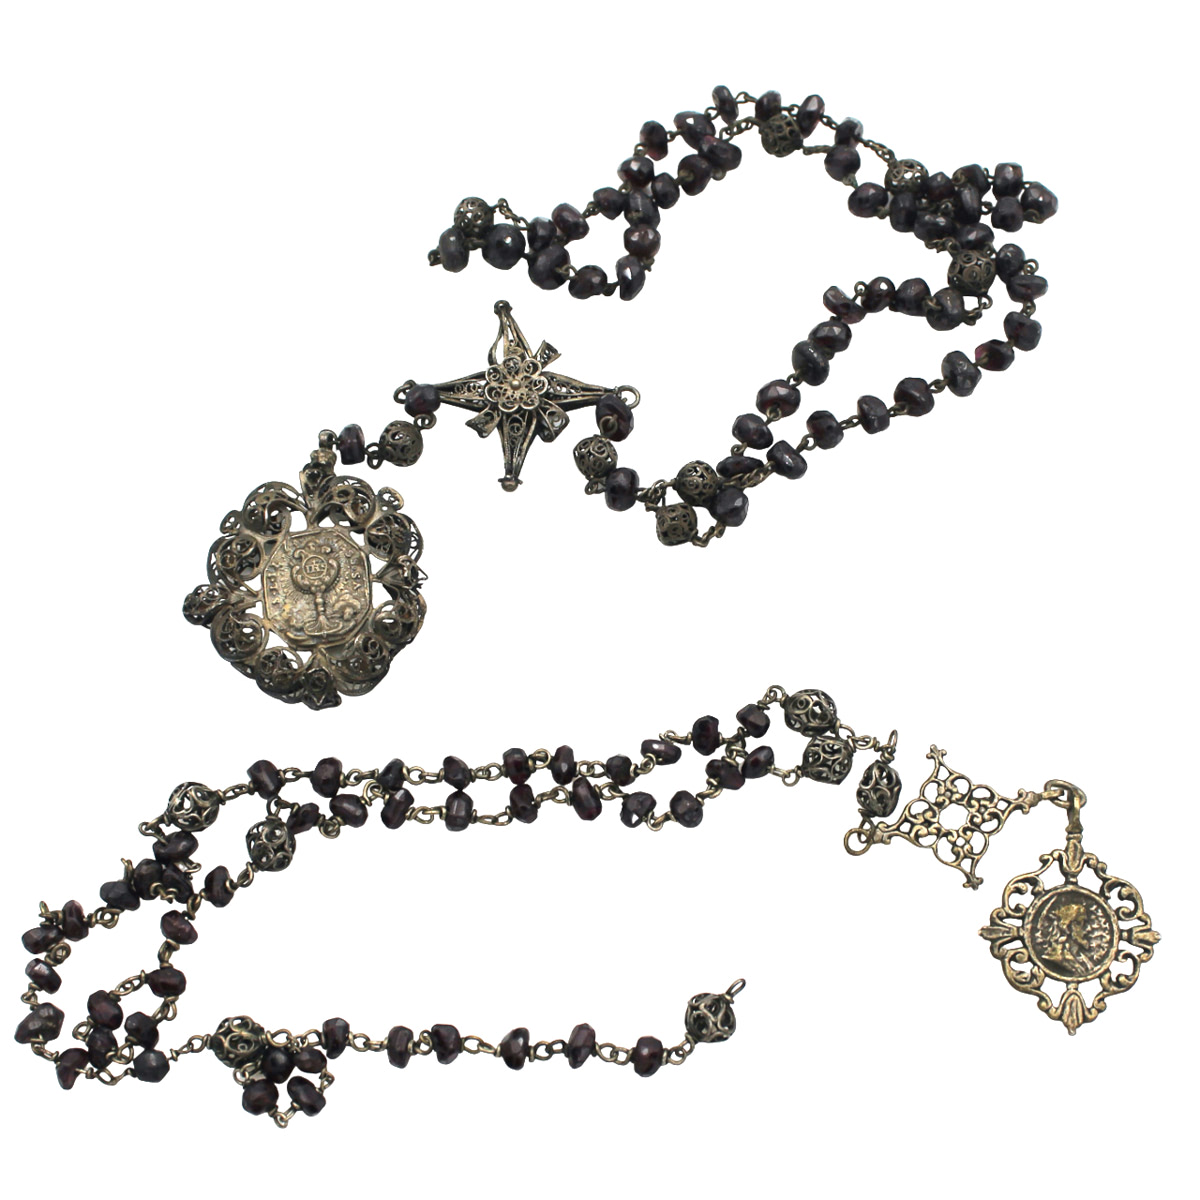 Due rosari - Two rosaries